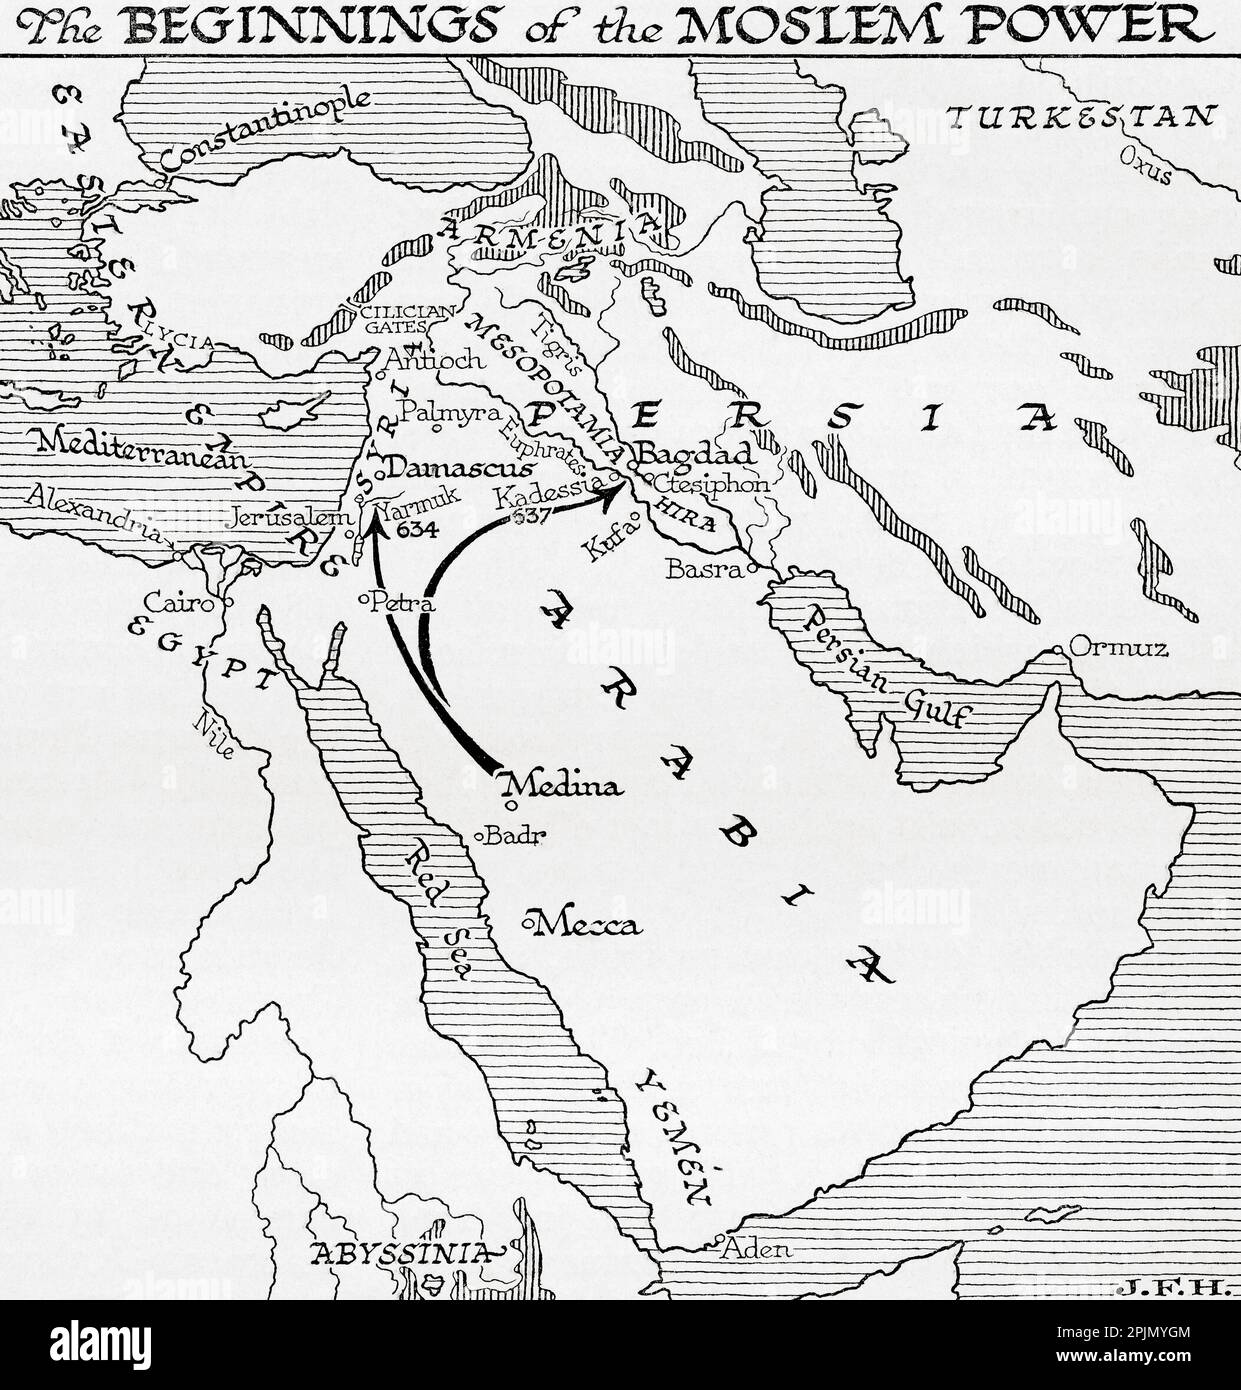 Carte montrant les débuts de la puissance musulmane, 7th siècle. Extrait du livre Outline of History de H.G. Puits, publié en 1920. Banque D'Images